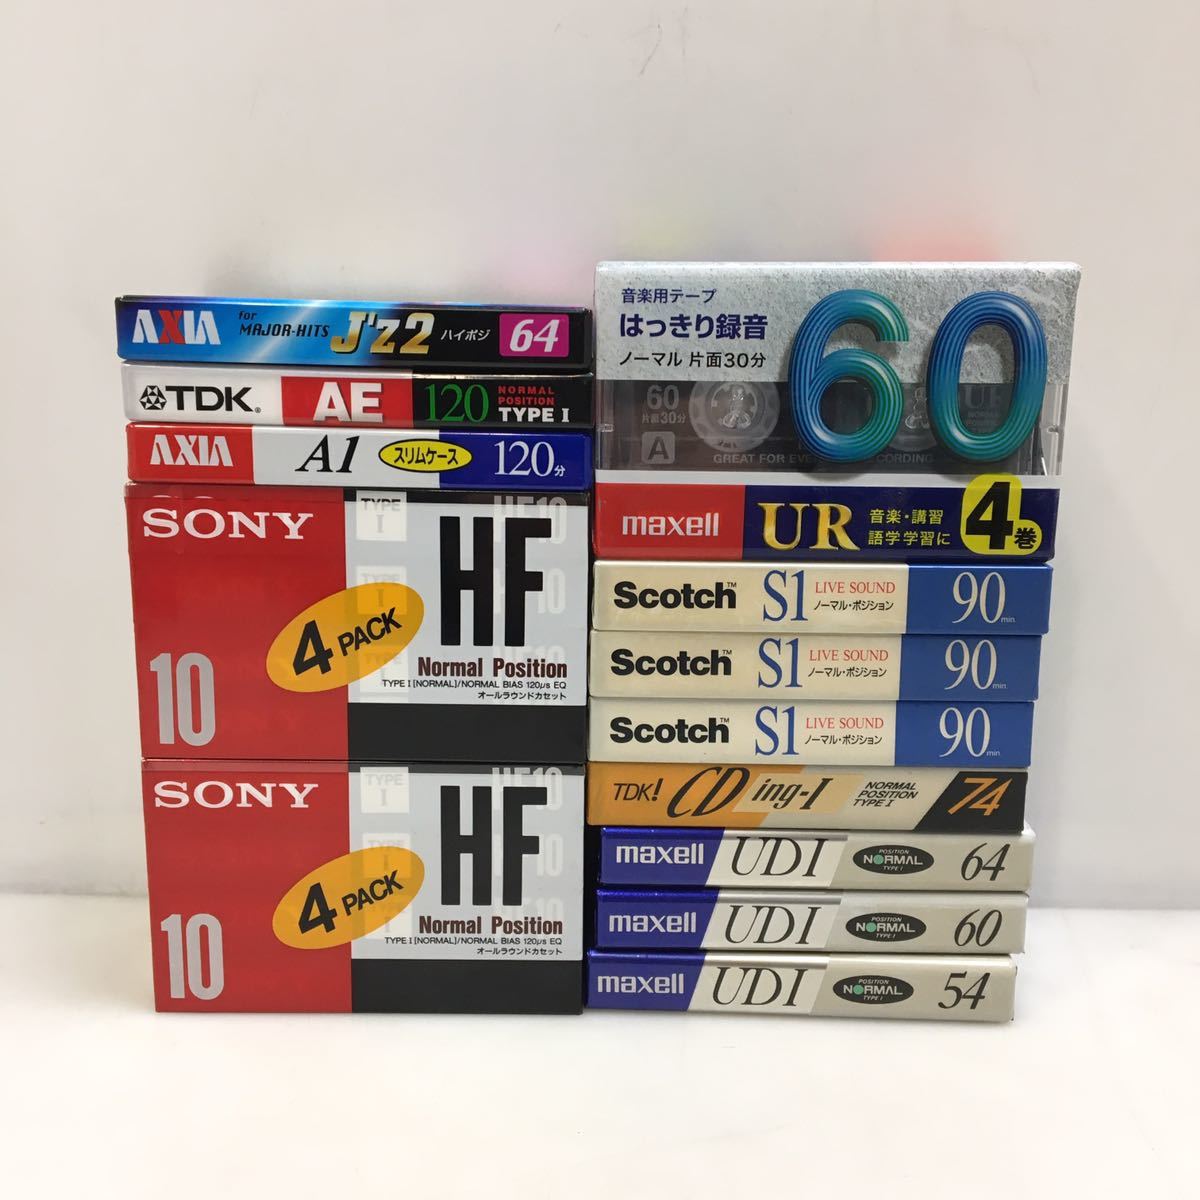 34-96 未開封 カセットテープ SONY HF Scotch S1 maxell UDI UR TDK AXIA_画像5